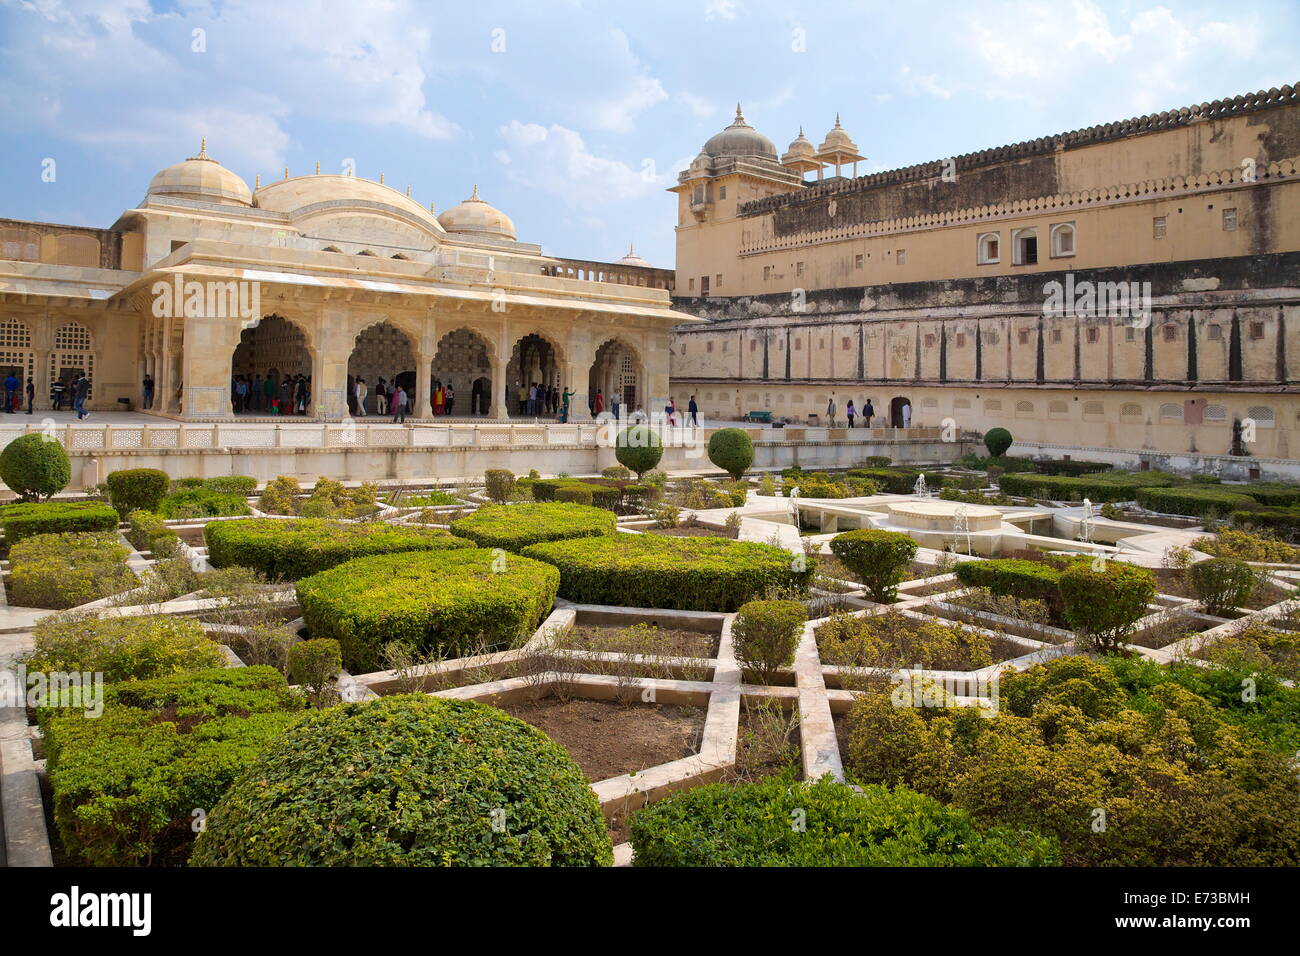 Los jardines y el salón de los espejos, Amber Fort Palace, Jaipur, Rajasthan, India, Asia Foto de stock